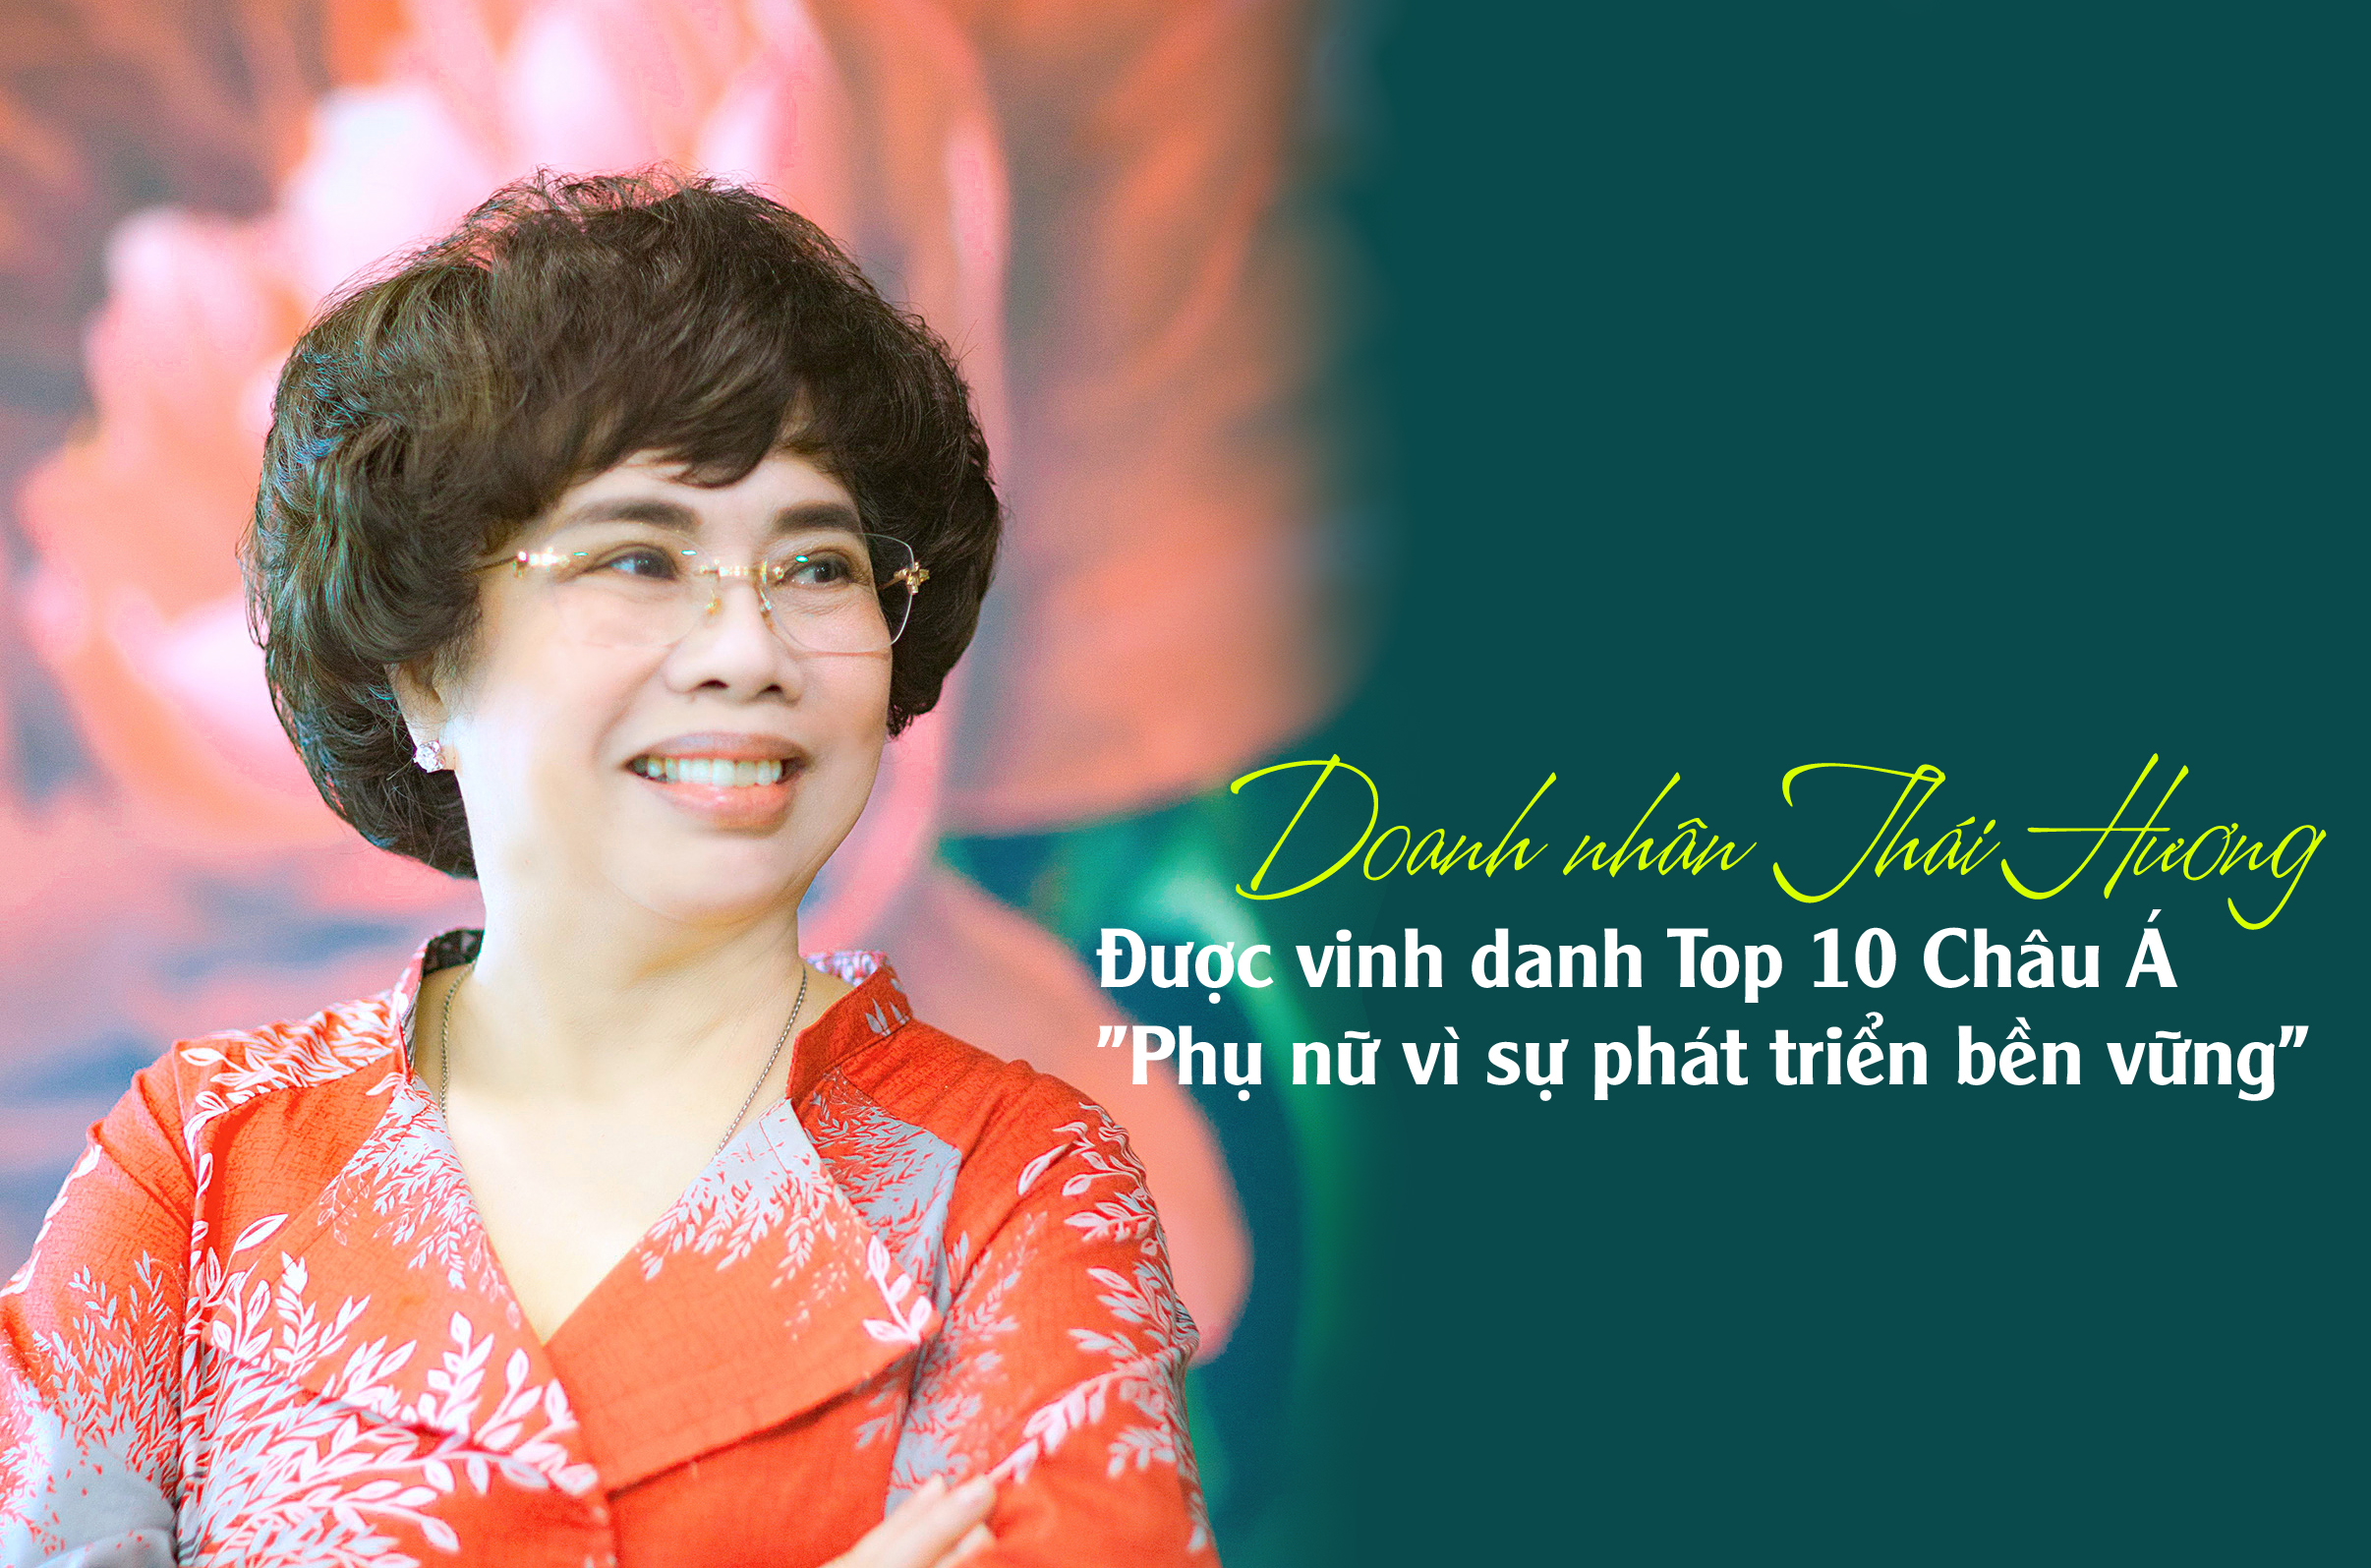 Doanh nhân Thái Hương được vinh danh Top 10 Châu Á "Phụ nữ vì sự phát triển bền vững"